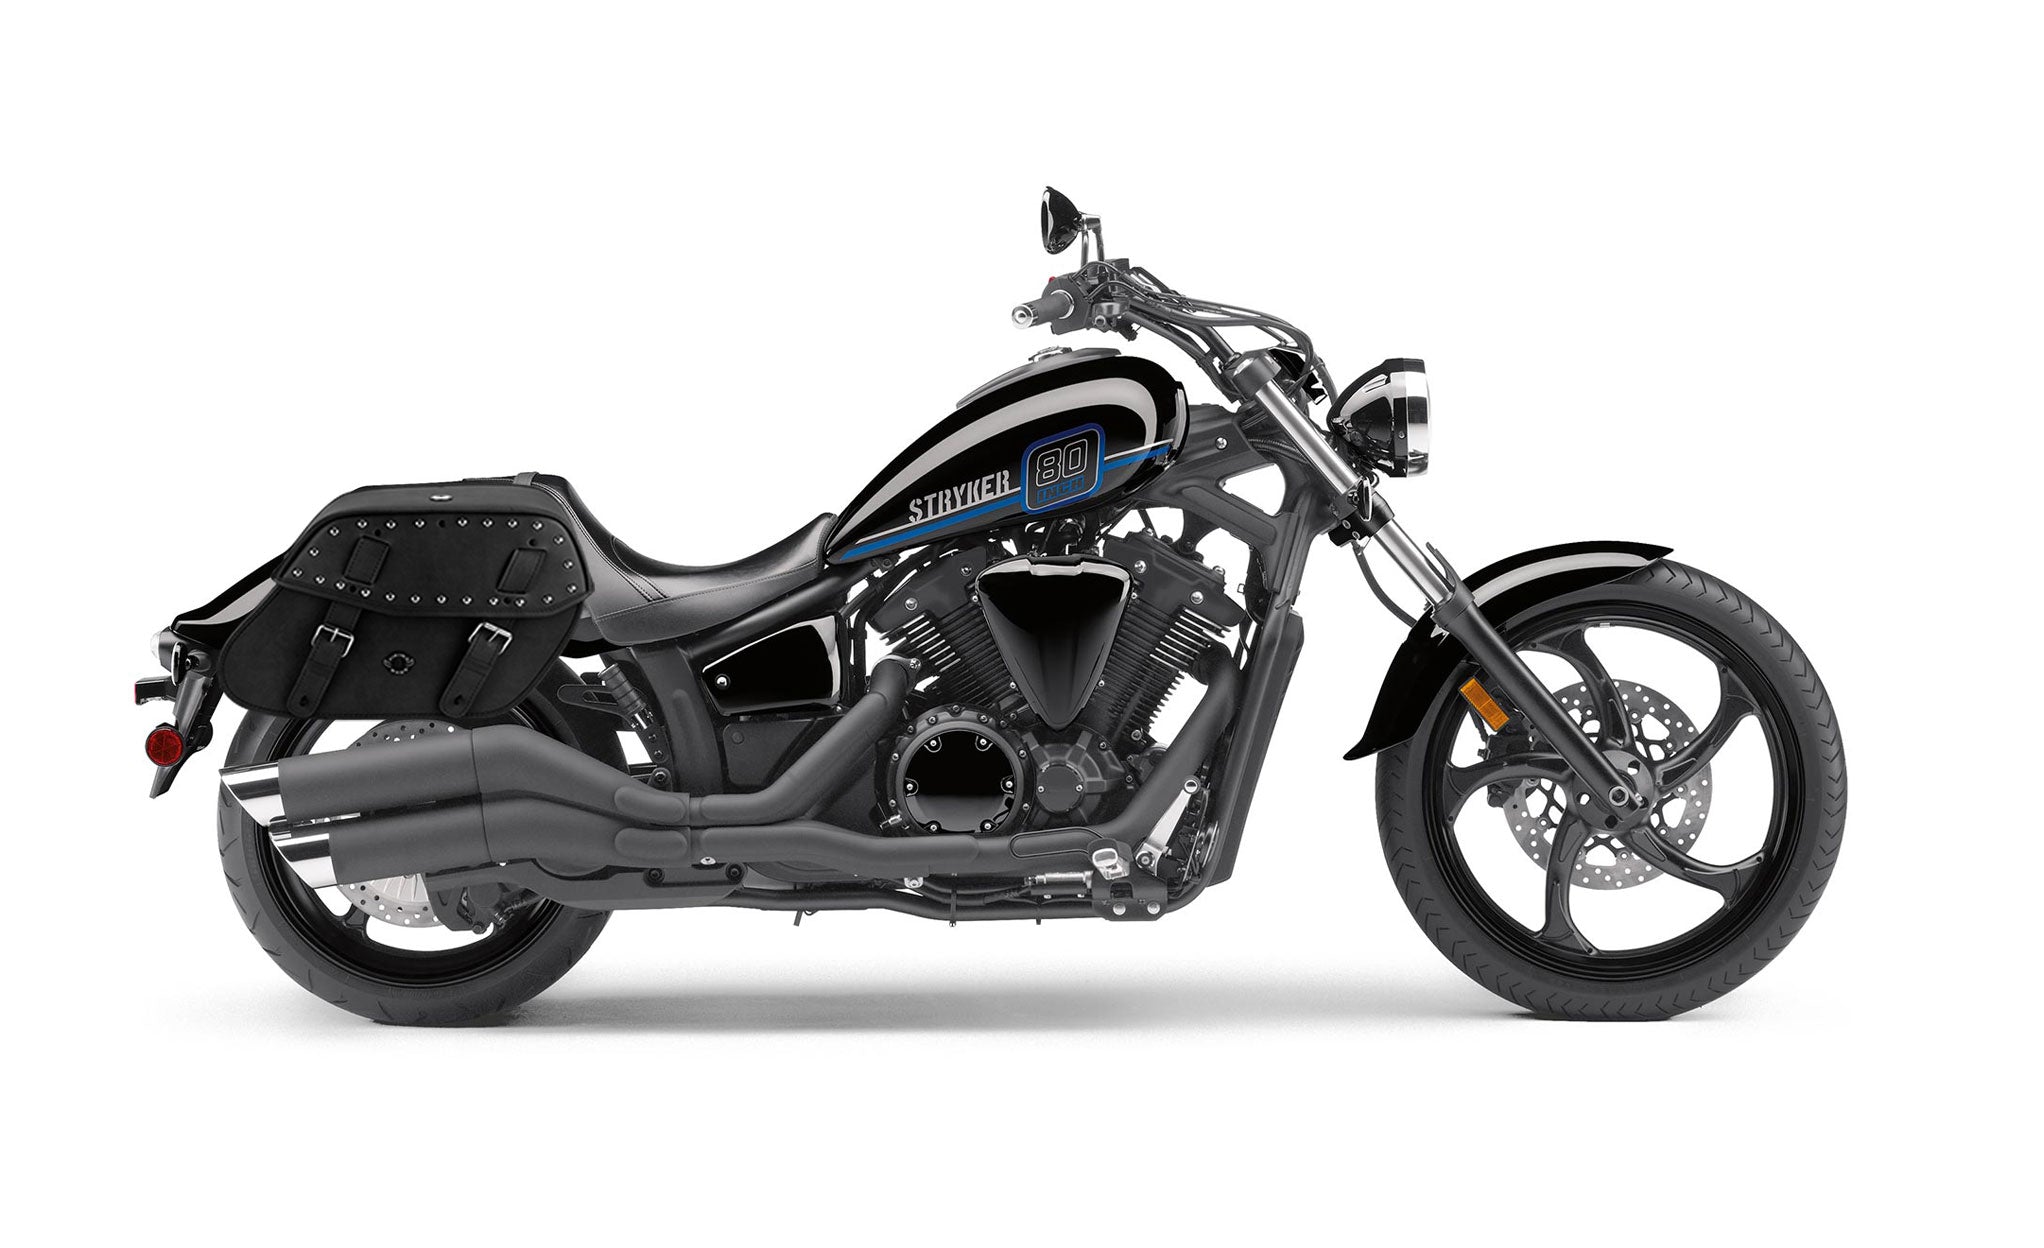 Viking Odin Large Yamaha Stryker Studded Leather Motorcycle Saddlebags on Bike Photo @expand